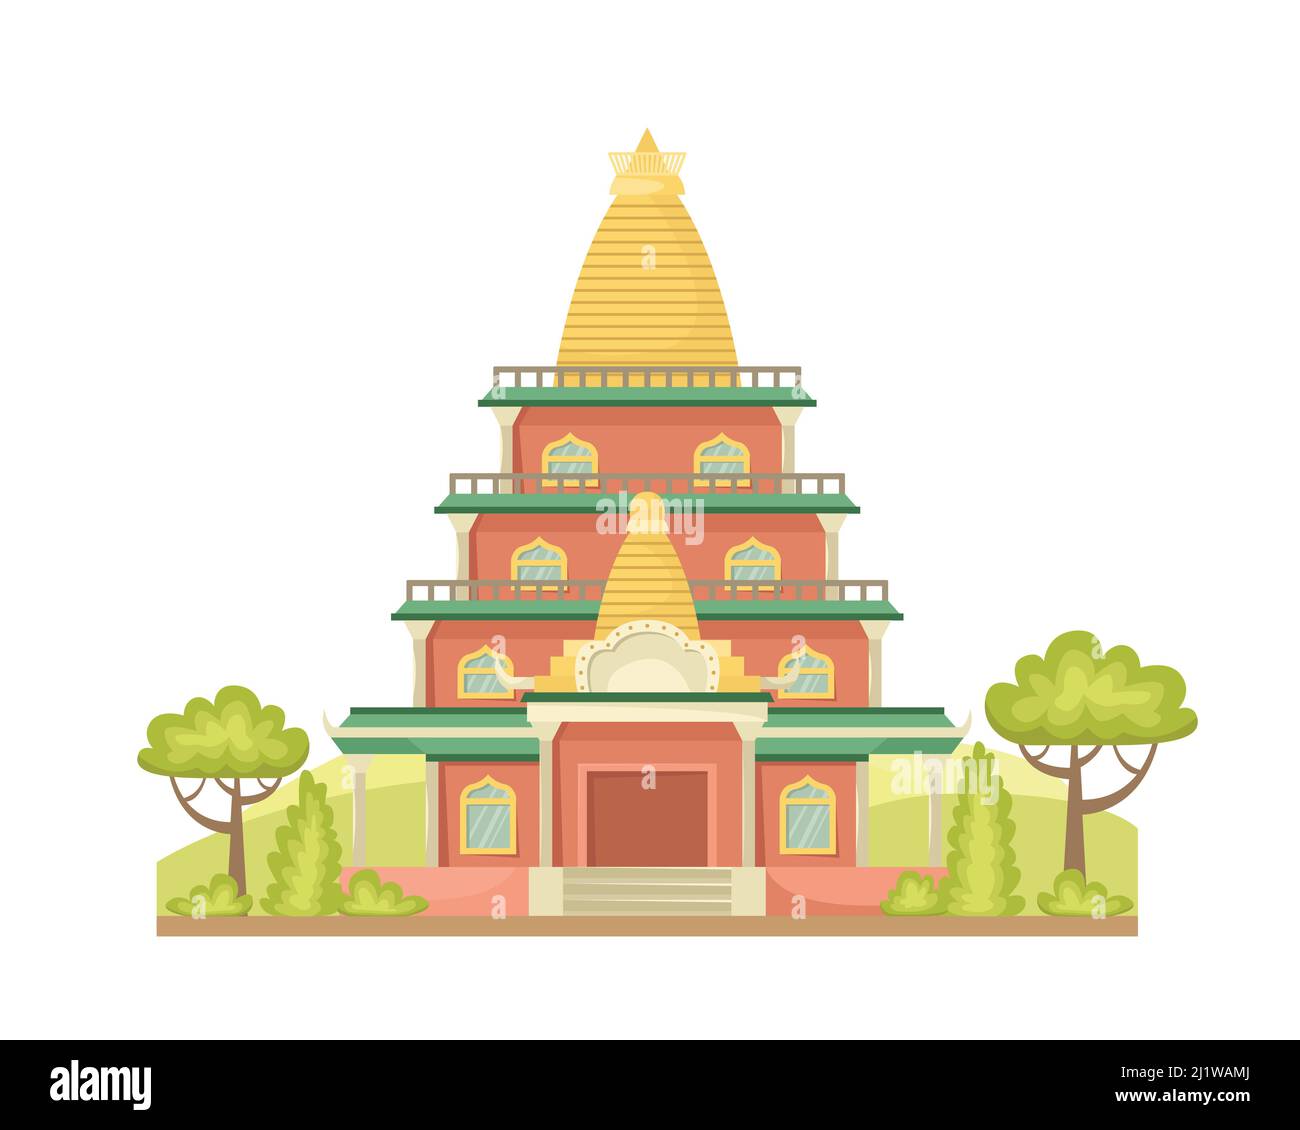 Vektor-Illustration eines buddhistischen Tempels. Religiöses Architekturgebäude. Flacher Style Stock Vektor